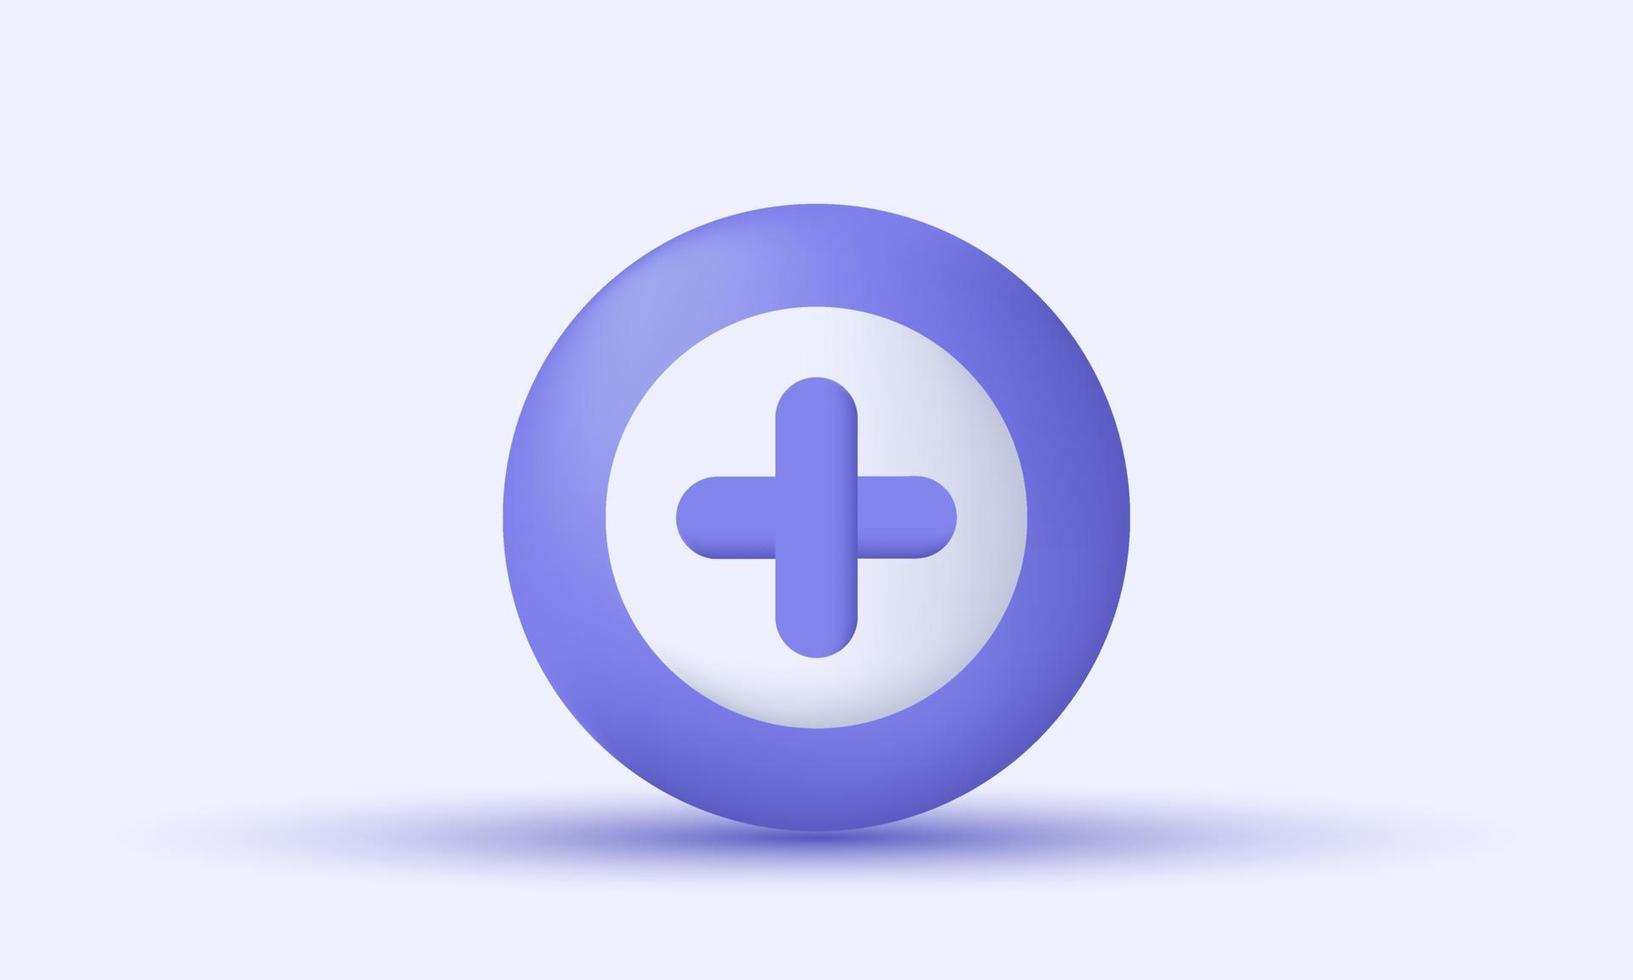 único 3d púrpura agregar más icono de diseño de botón de círculo cruzado médico aislado en vector